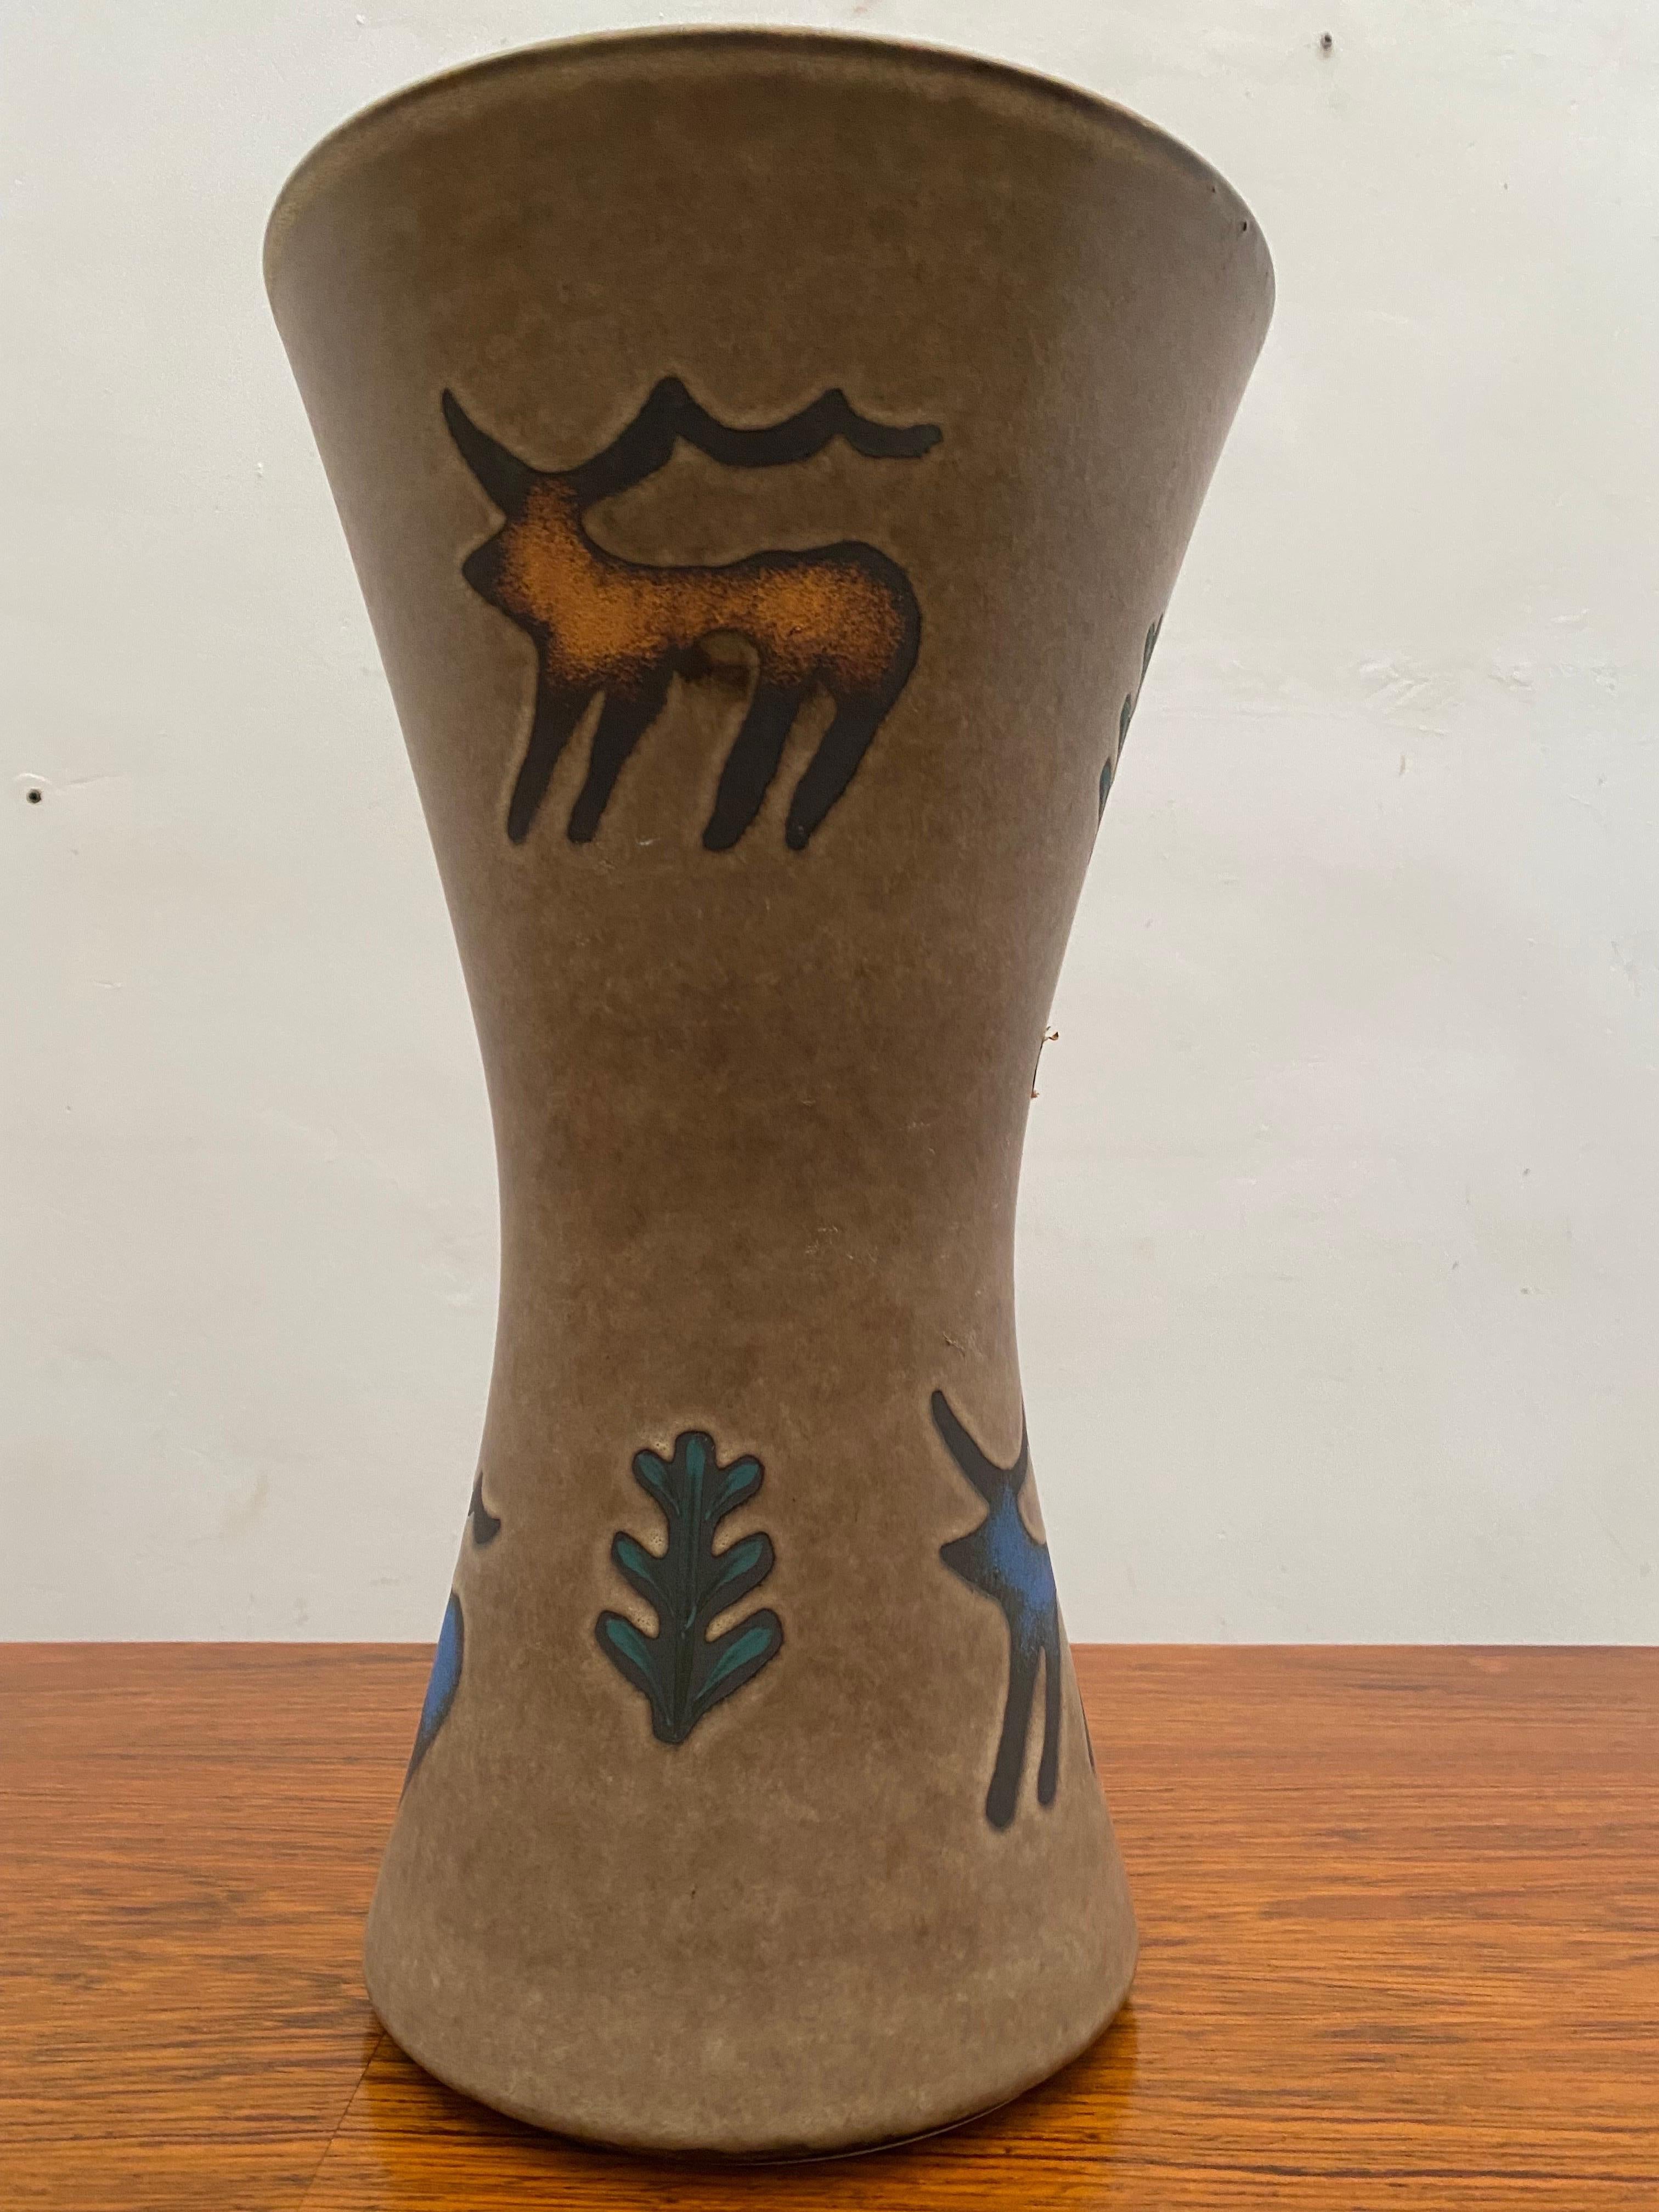 Un grand vase en céramique conçu avec des animaux préhistoriques dans les couleurs bleu et orange fabriqué en Allemagne par Hohr dans les années 1960 en très bon état, signé sur le fond avec le numéro 1305/40 et Allemagne. Magnifique vase, vase de